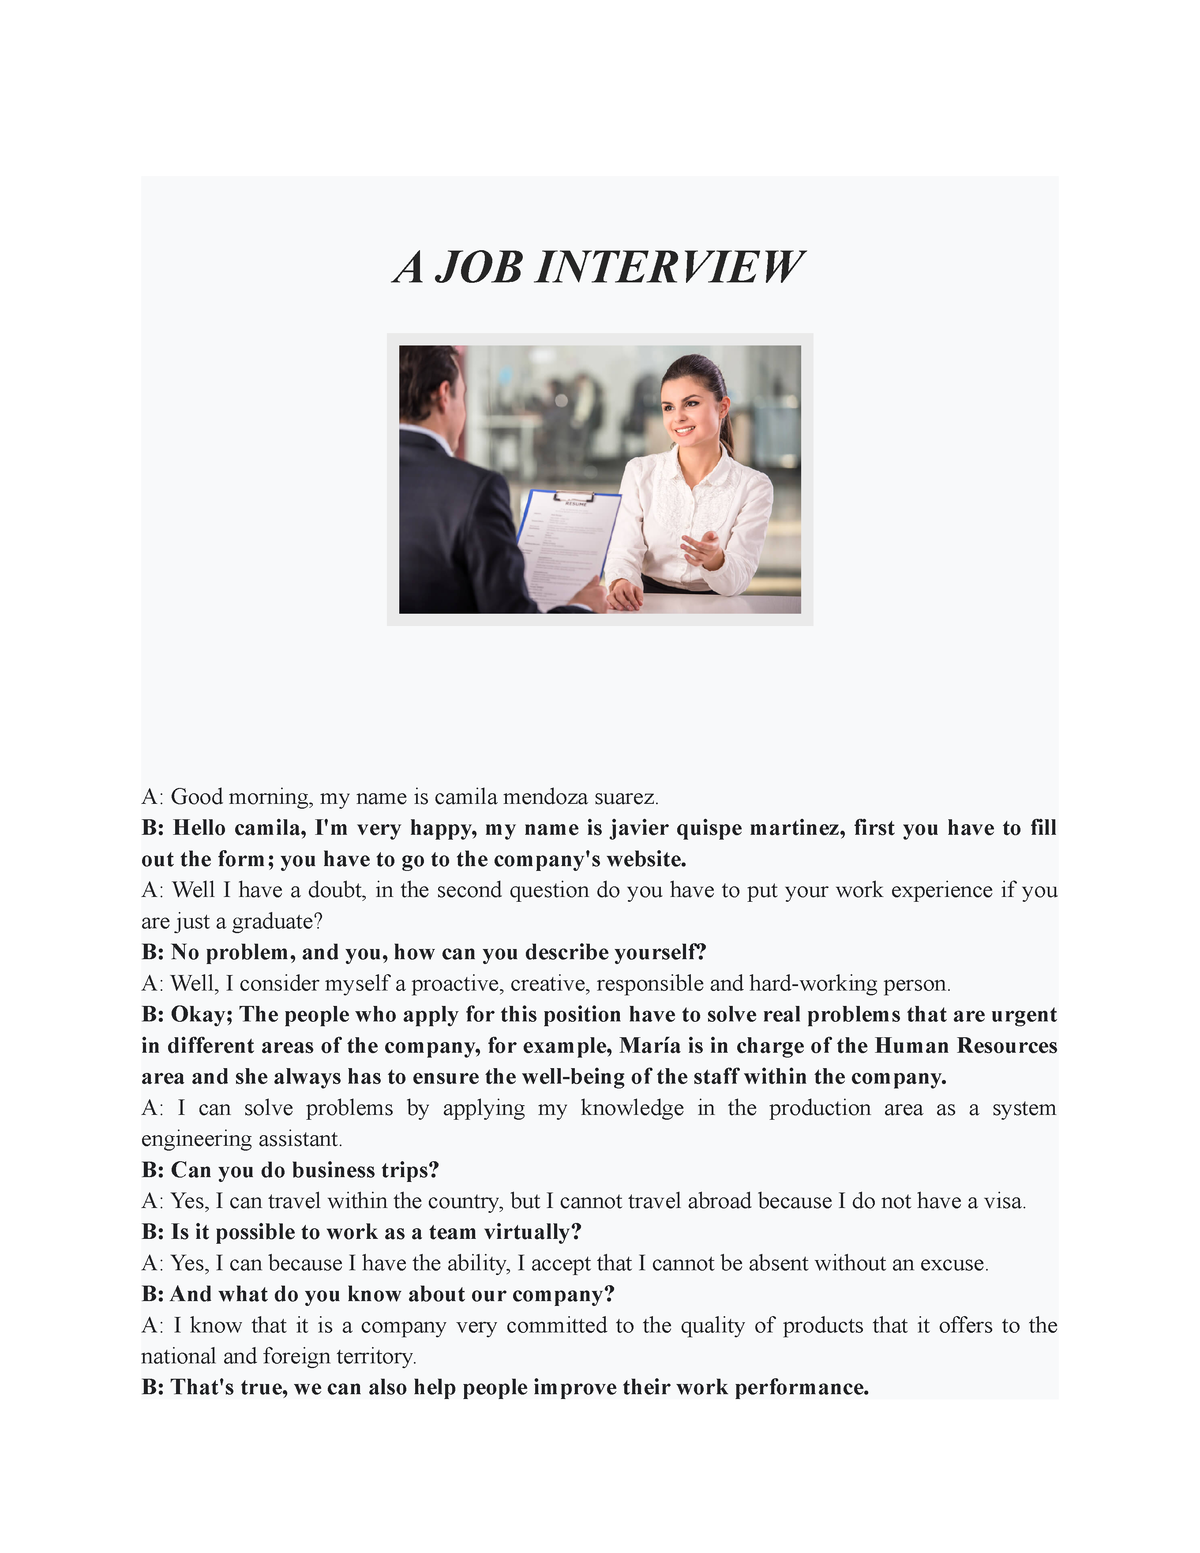 Semana 02 - Tarea: Asignación - Una entrevista de trabajo (PA) - A JOB ...